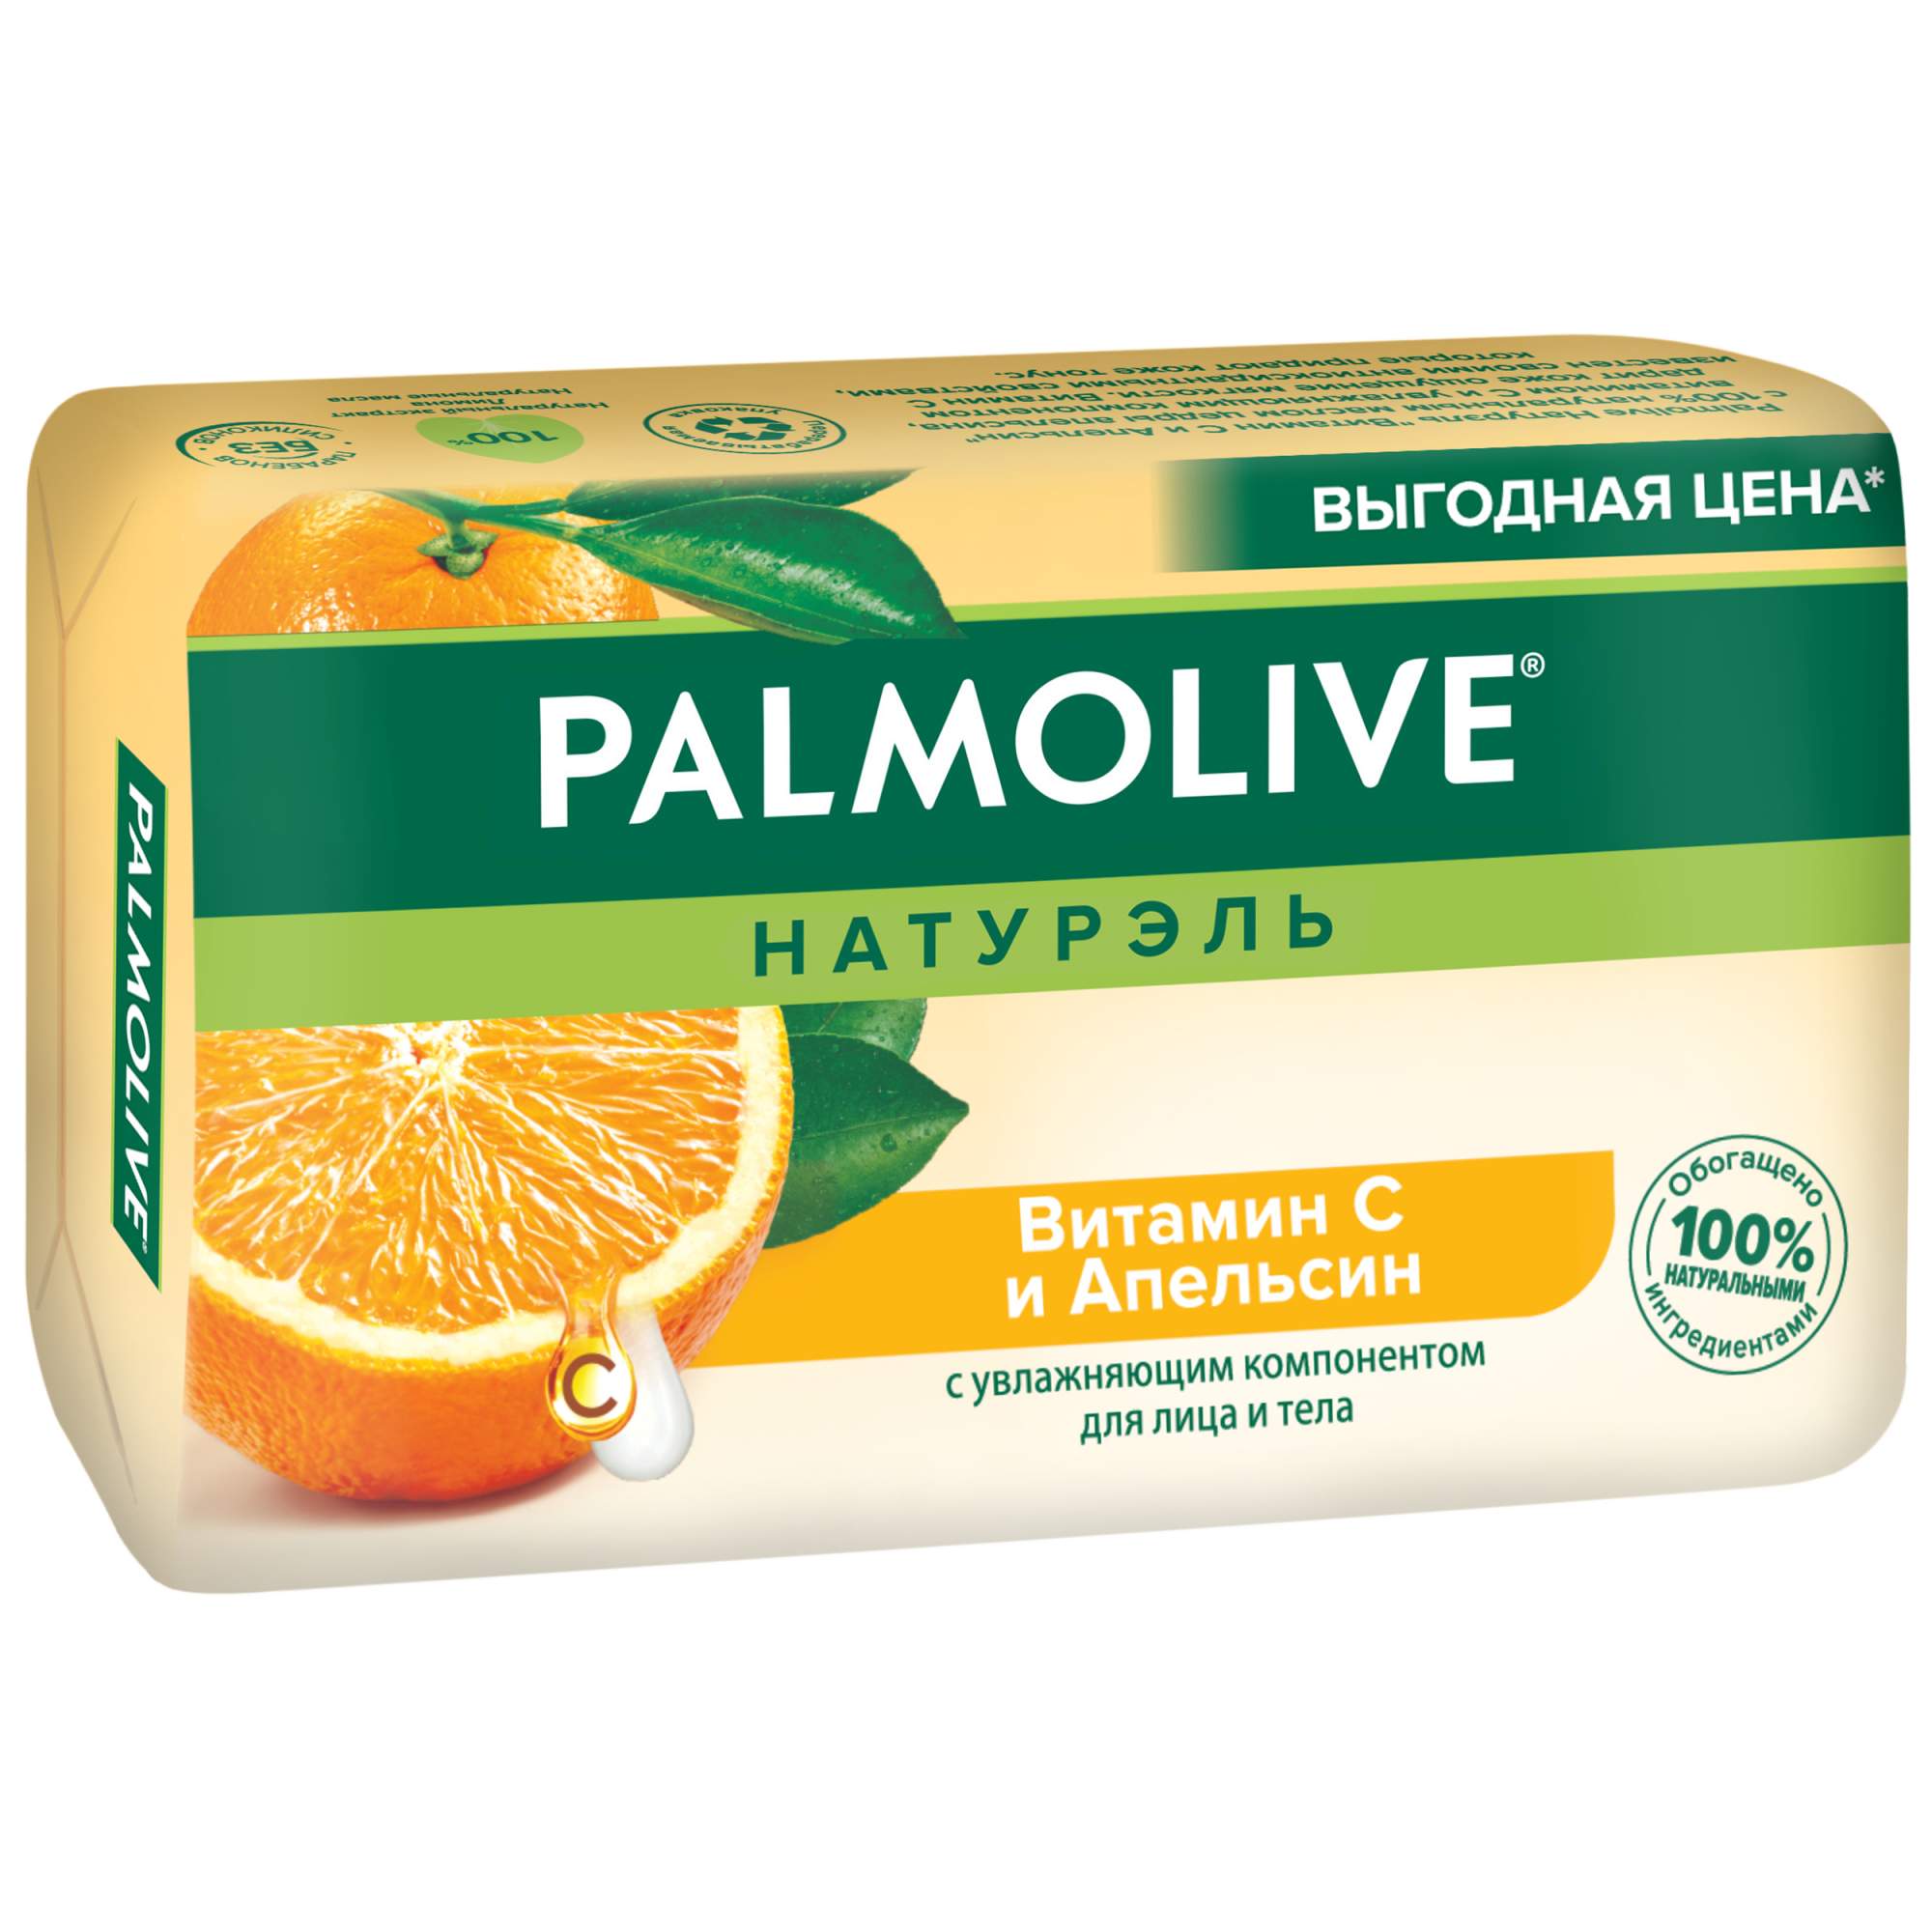 Мыло Palmolive Натурэль с витамином С и апельсином, 150 г - купить в Мегамаркет Москва, цена на Мегамаркет